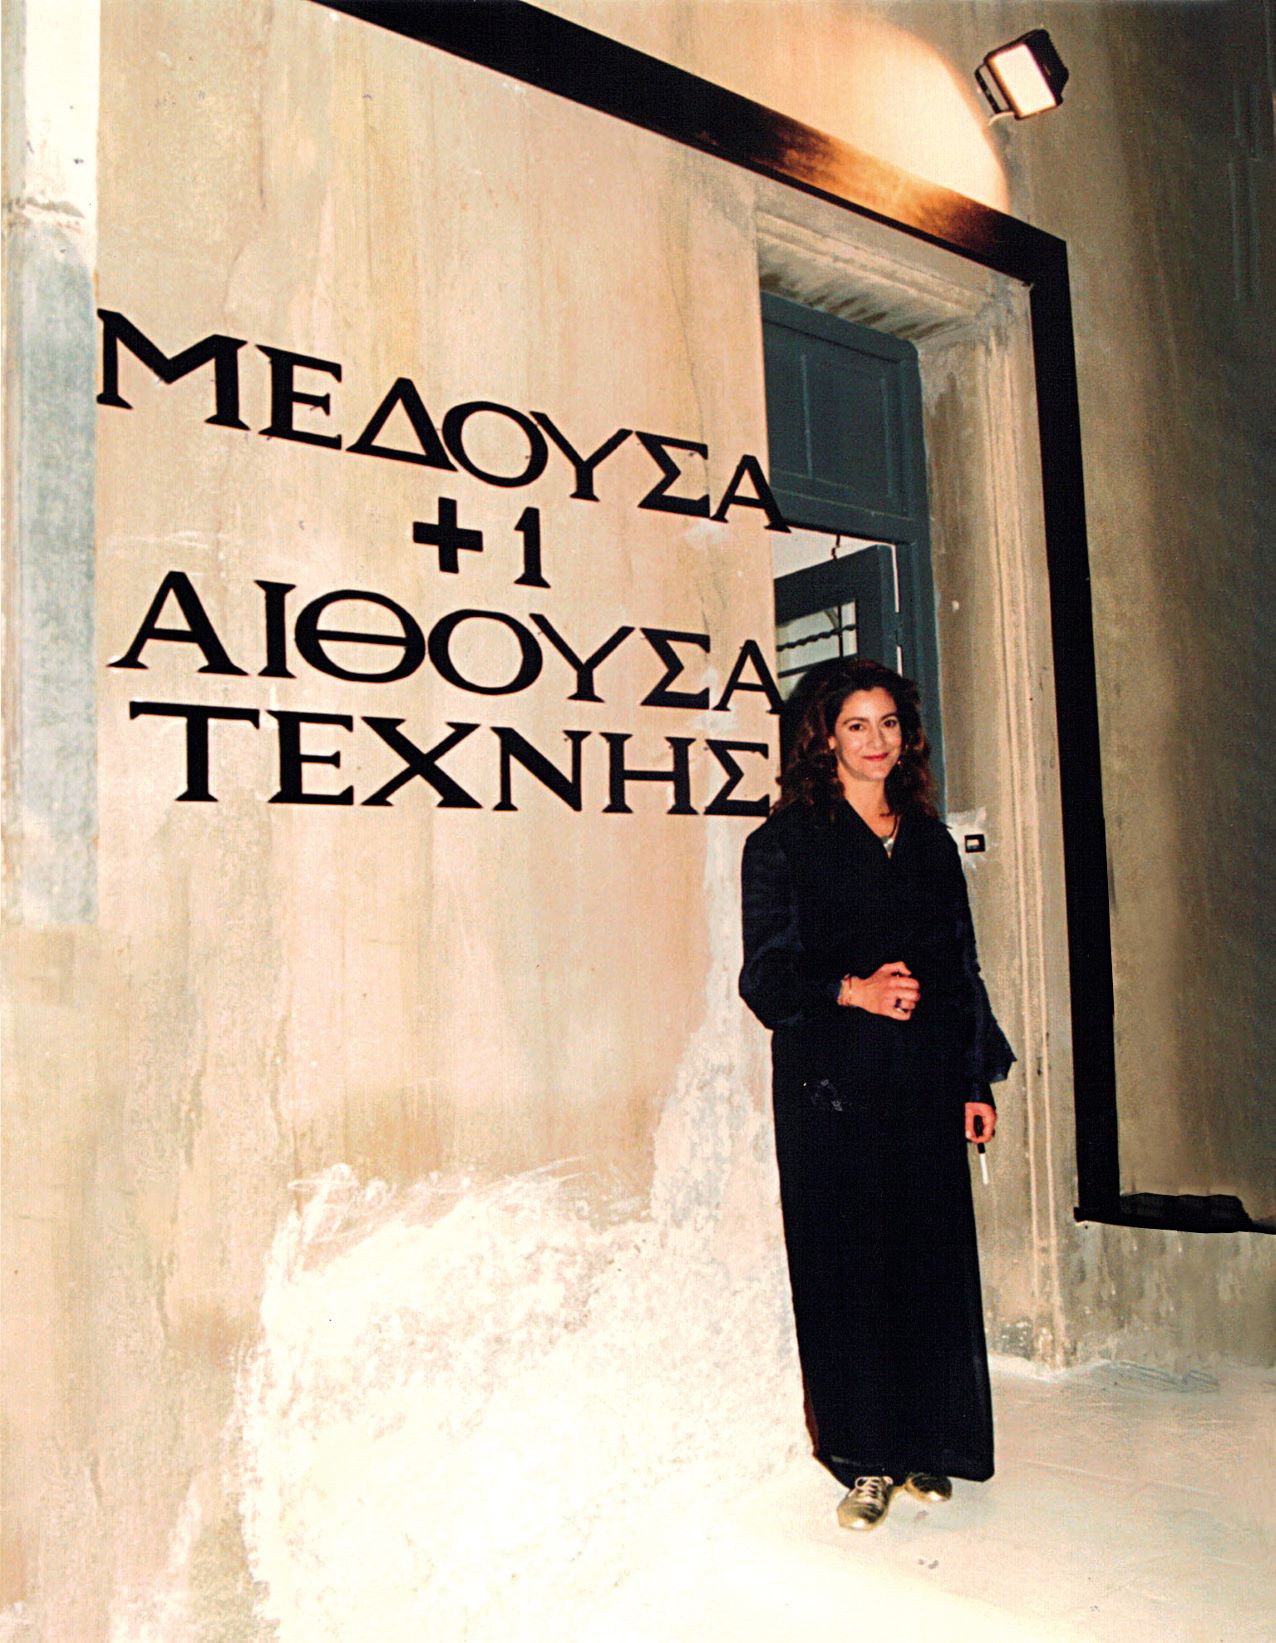 Η Μαρία Δημητριάδη έξω από τη Μέδουσα+1, Ξενοκράτους 21, περίπου 1992